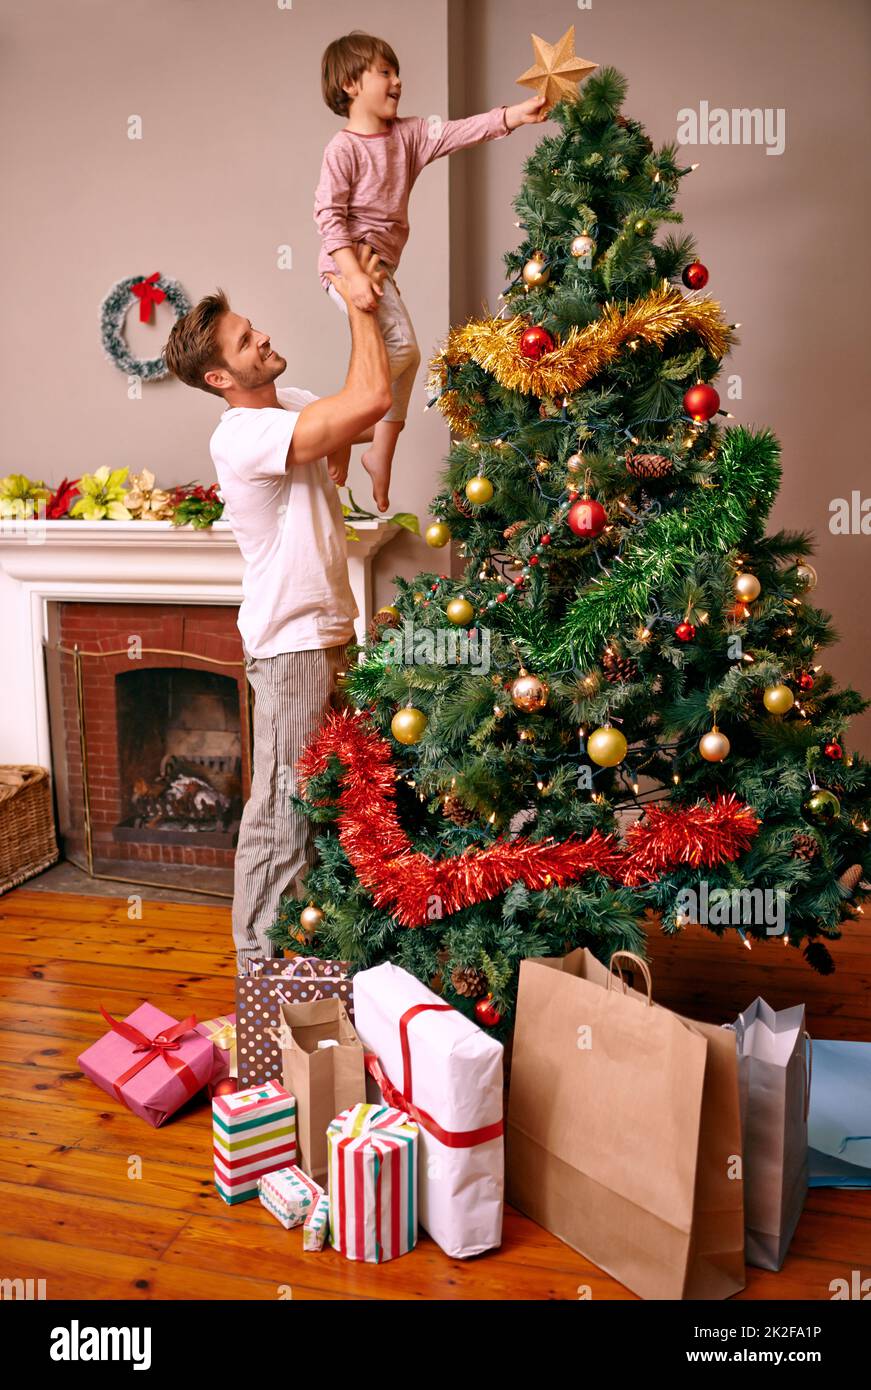 C'est une tradition familiale Un père levant son fils pour mettre l'étoile sur l'arbre de Noël. Banque D'Images